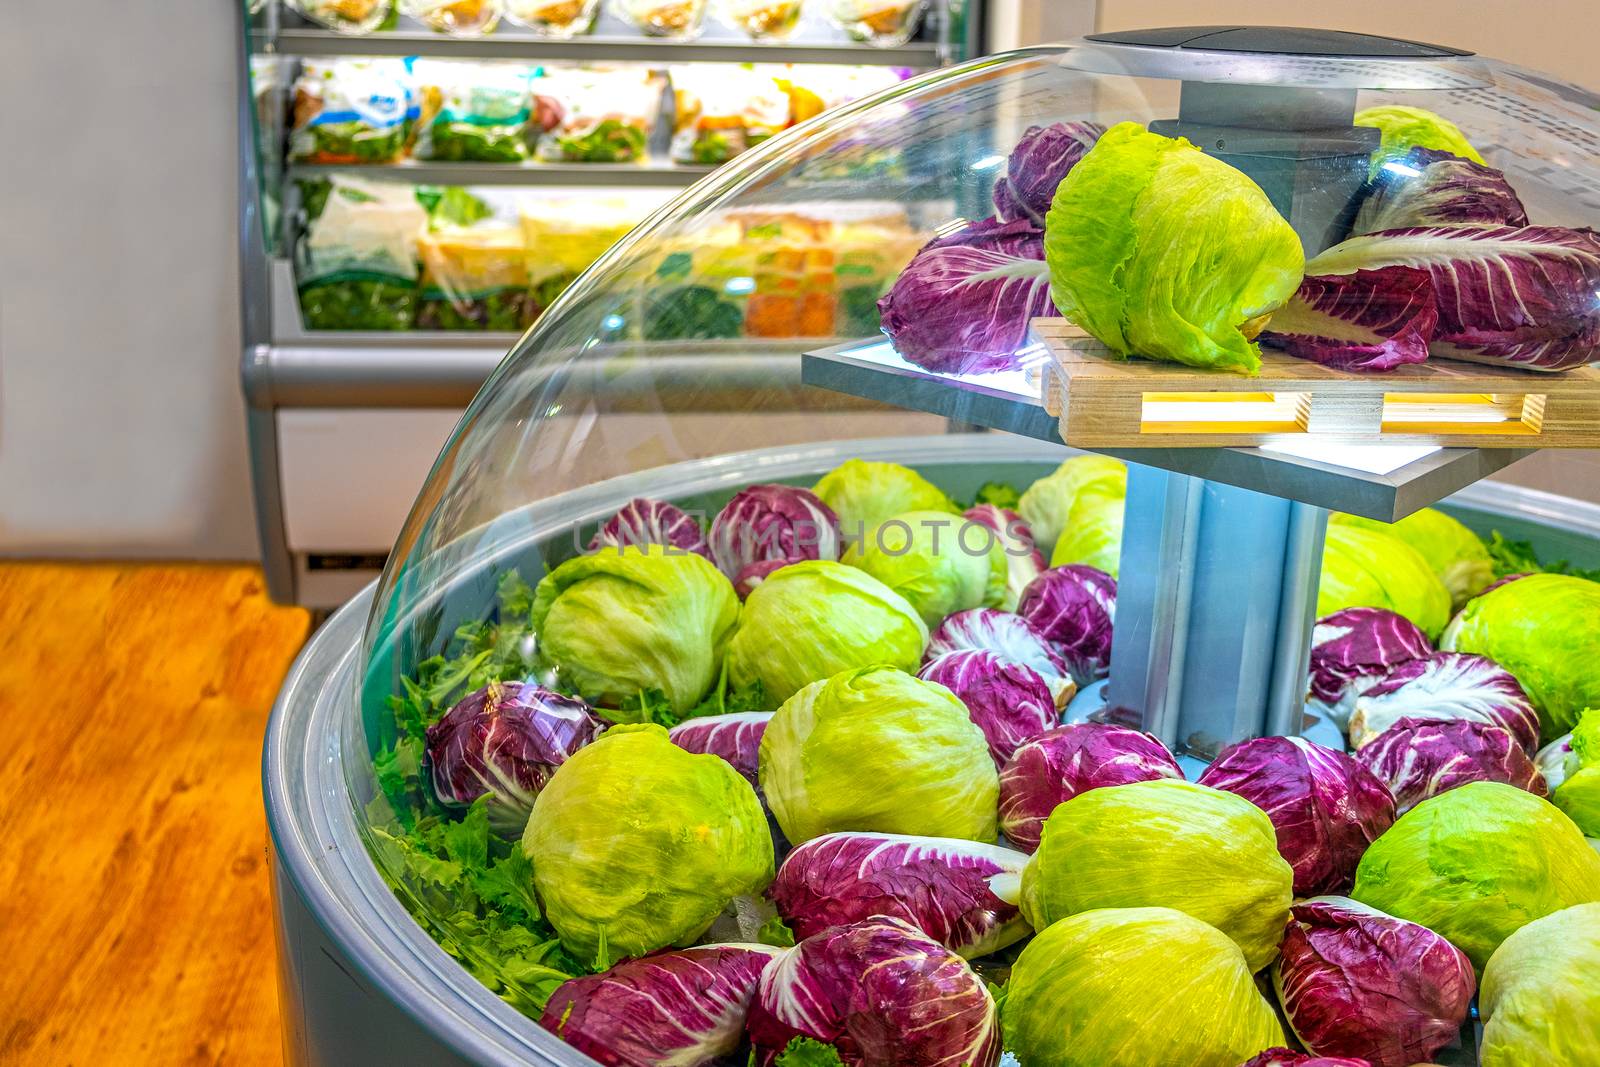 vegetable market refrigerator lettuce salad at supermarket by LucaLorenzelli